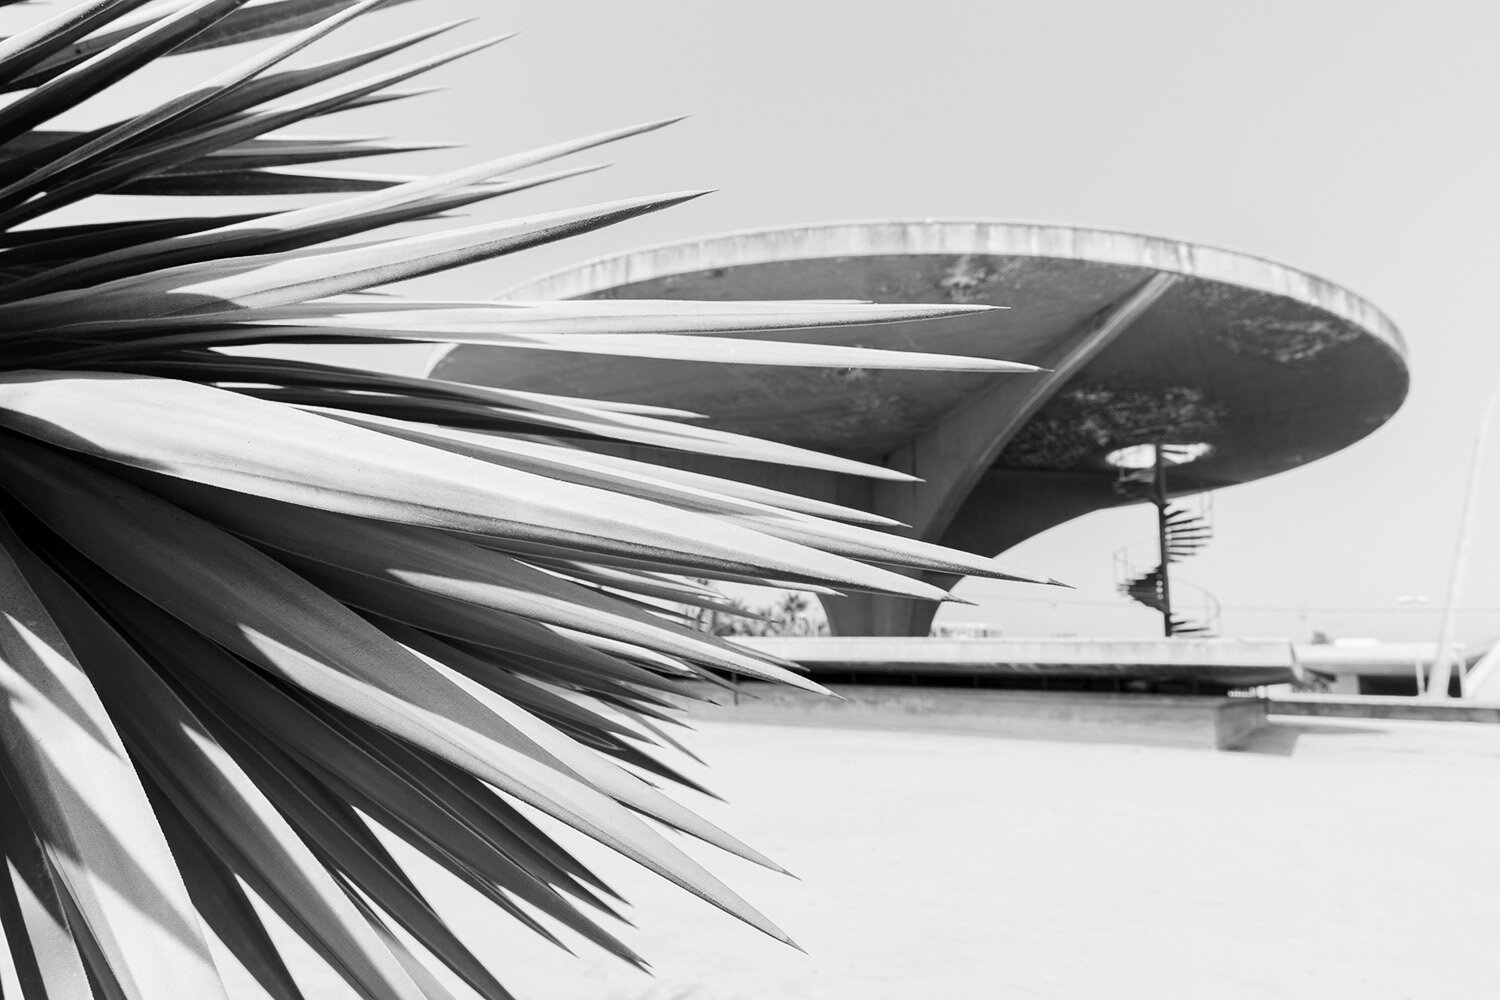  Tripoli Permanent International Fair - Oscar Niemeyer 